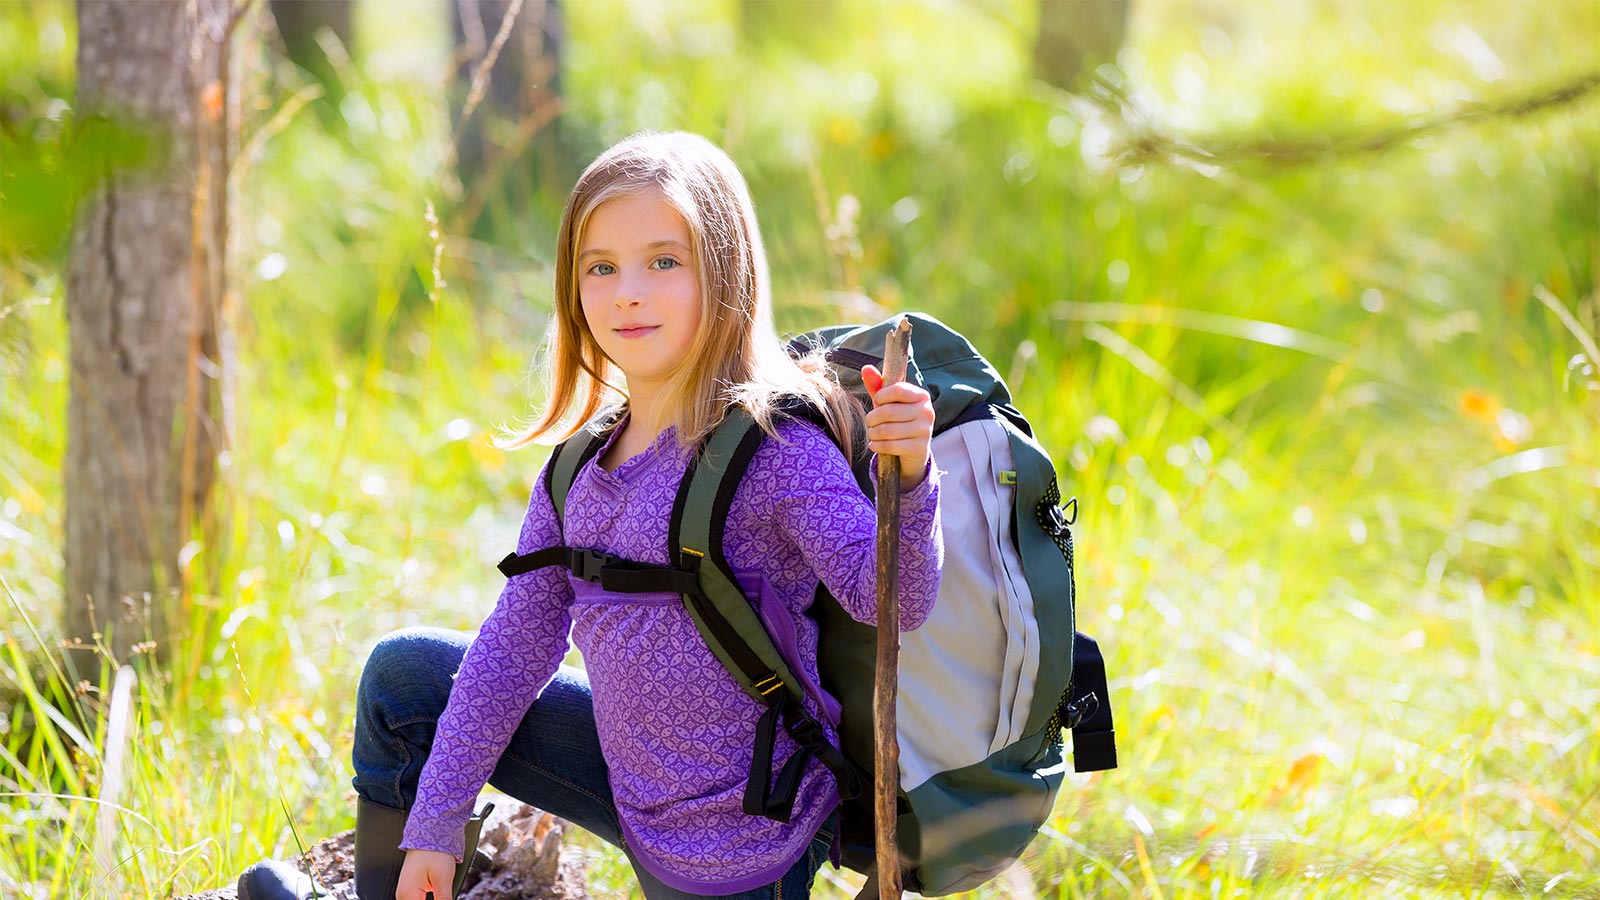 una bambina durante un'escursione in montagna con zaino e bastone